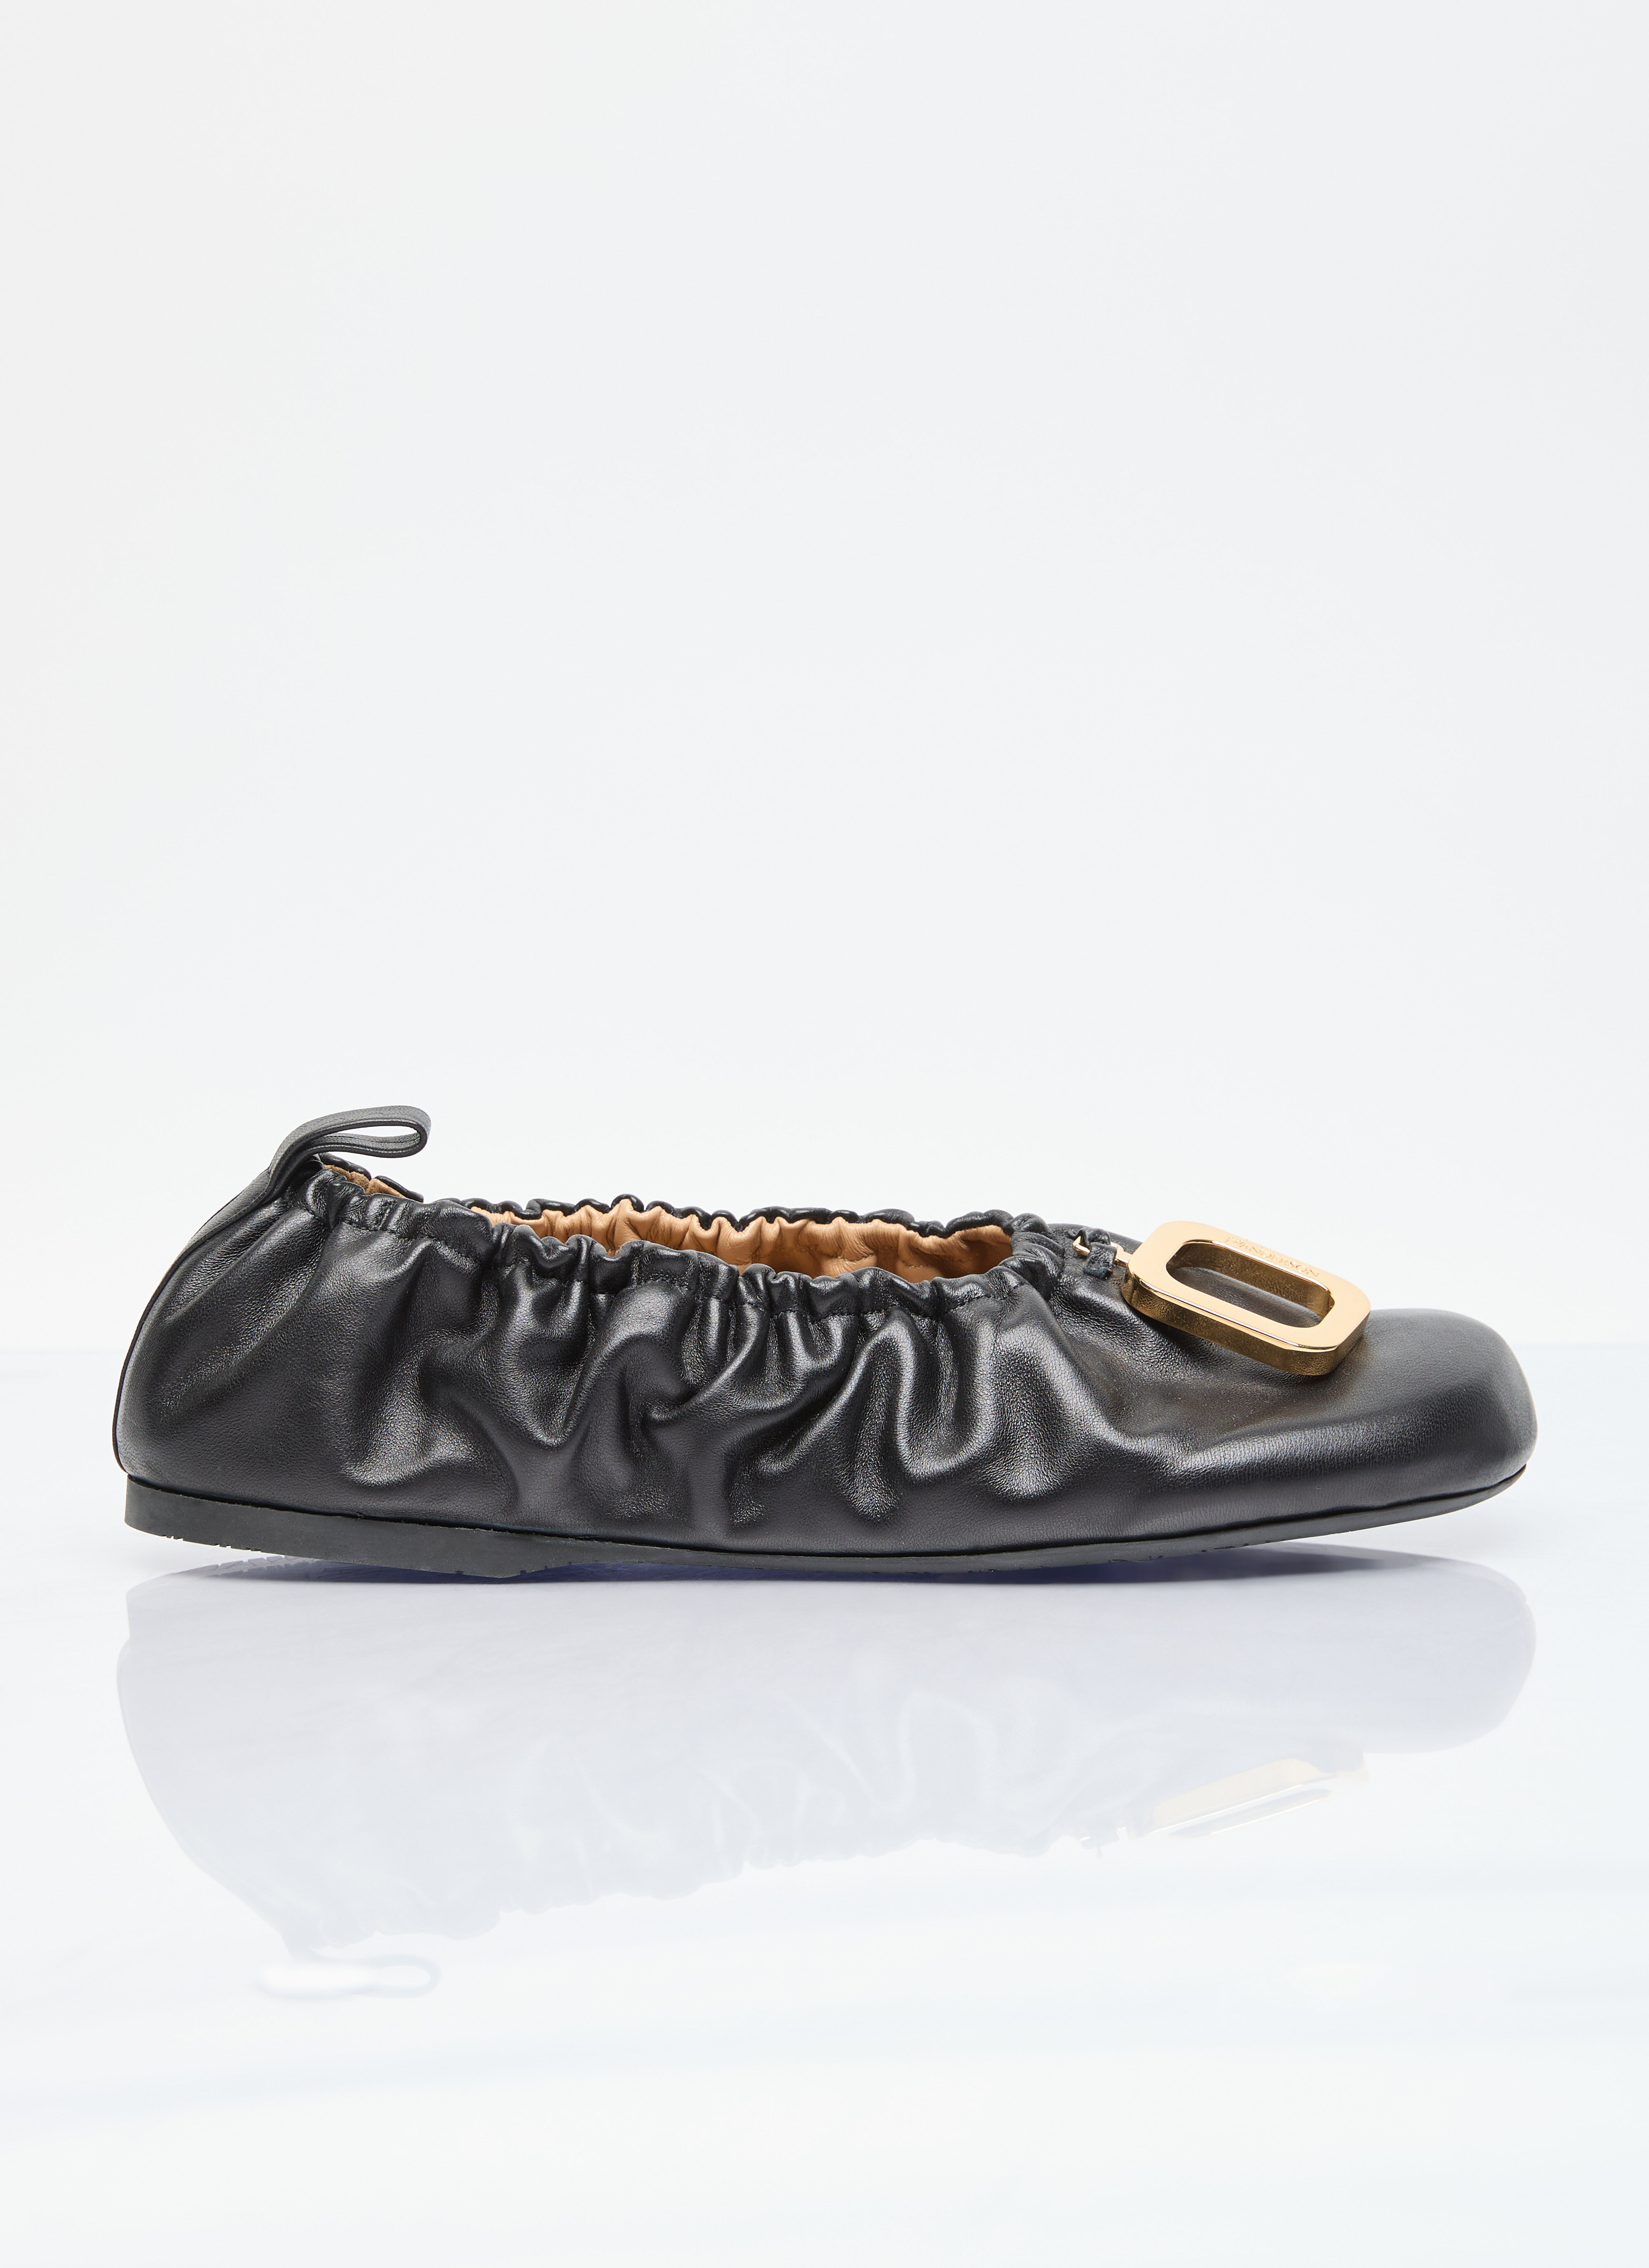 JW Anderson Puller Leather Ballet Flats Black jwa0254005